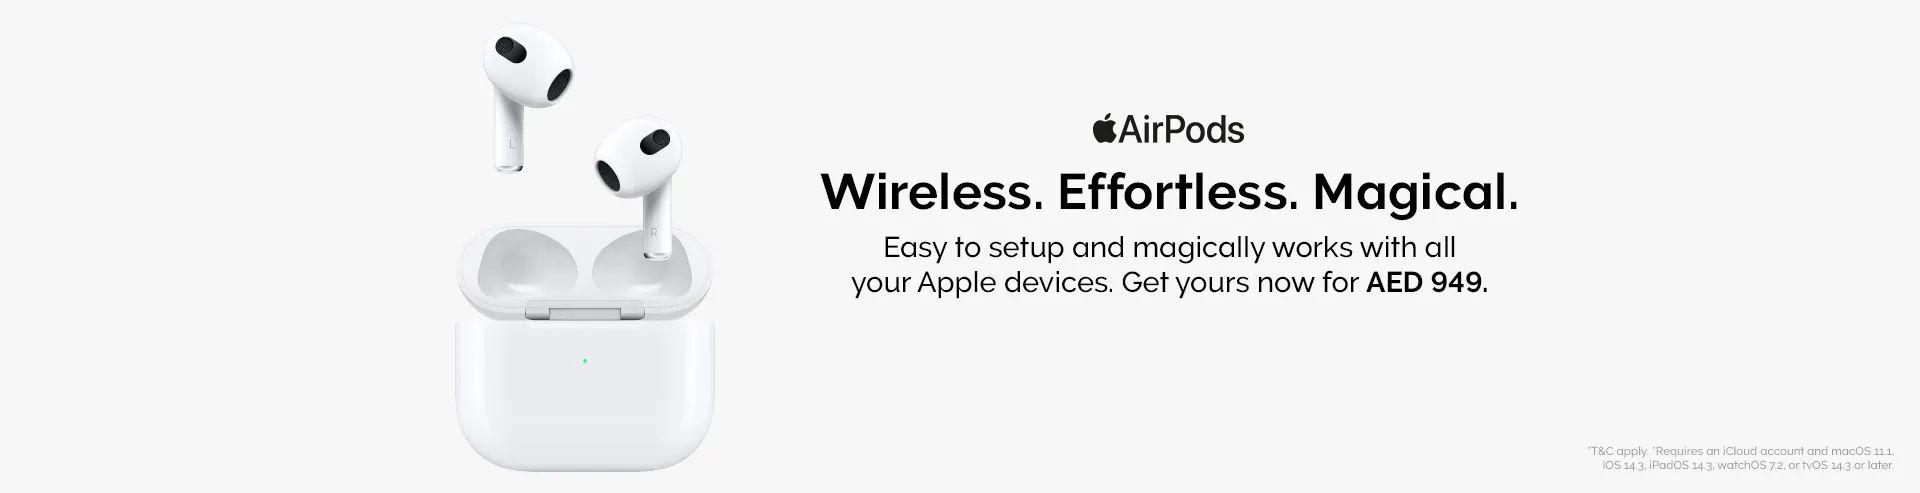 VM-Hero-Apple-AirPods-Awareness-1920x493.webp